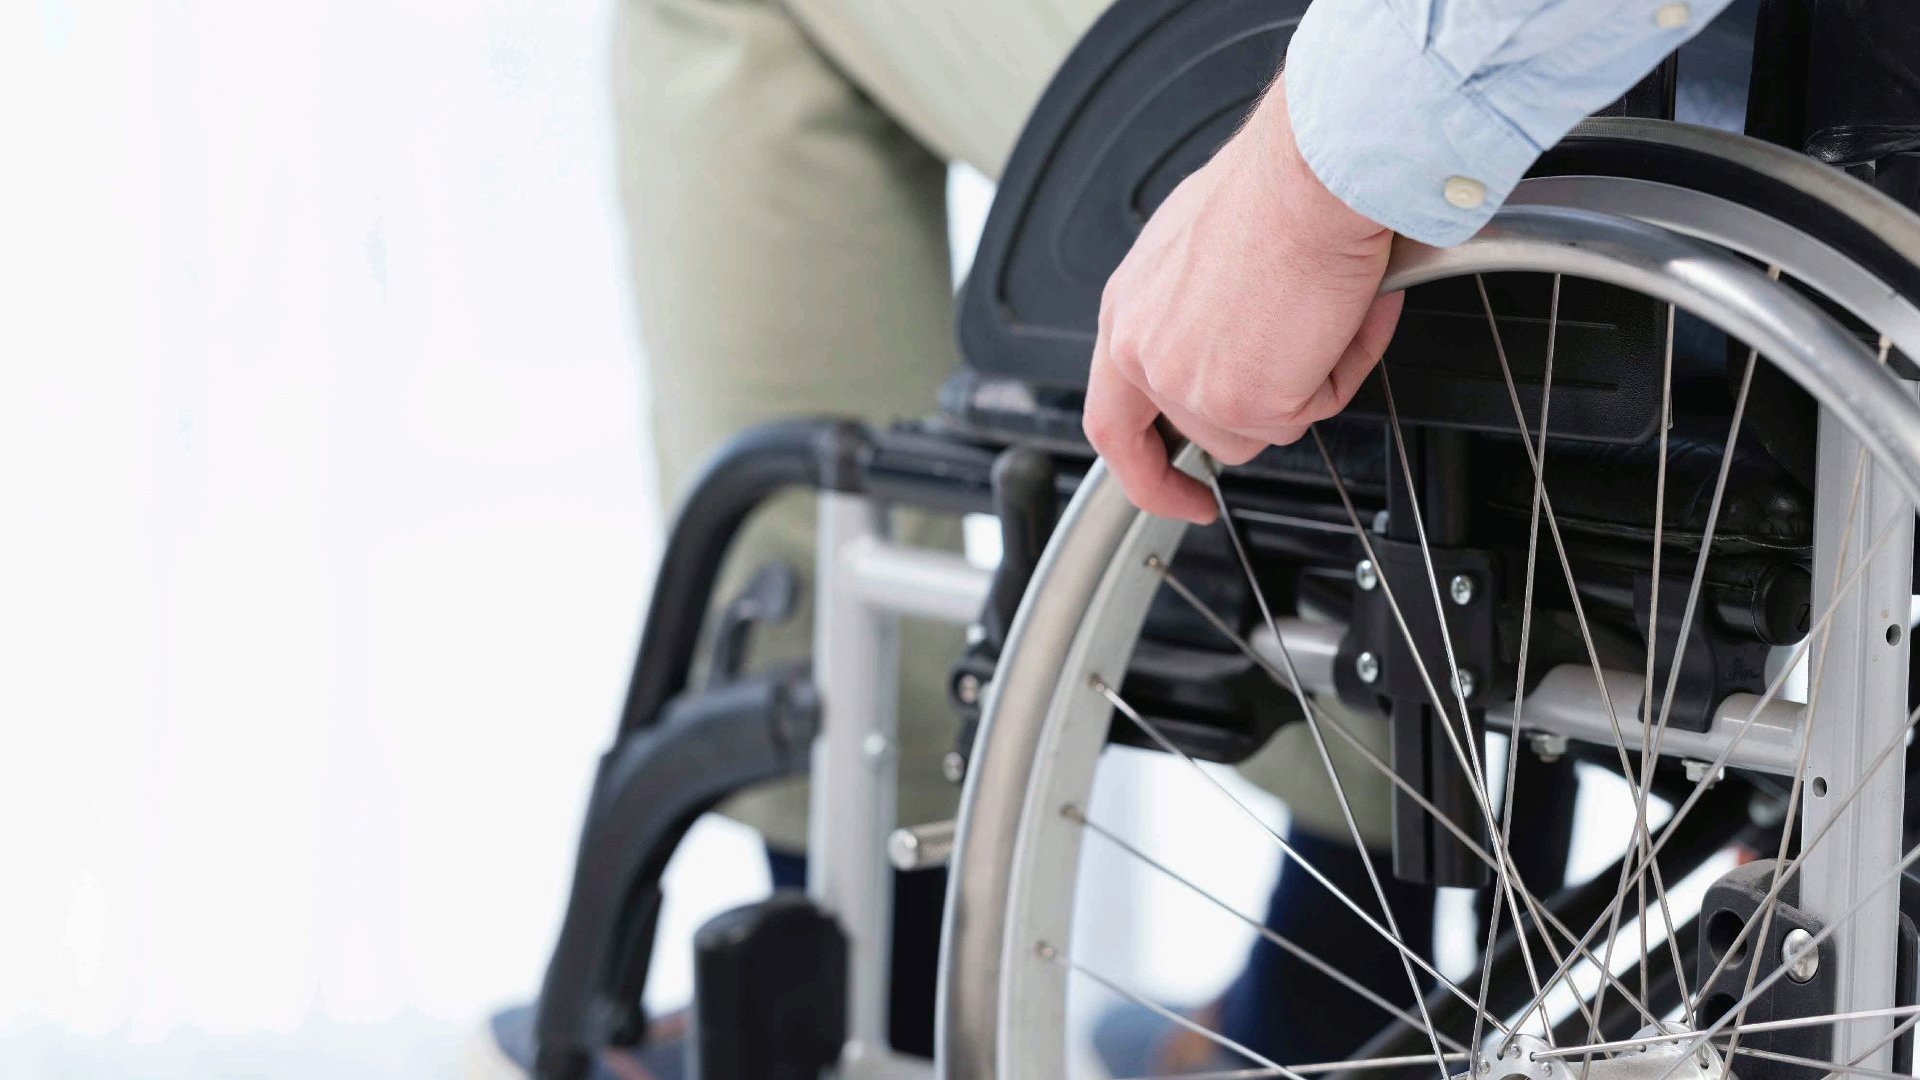 Na zdjęciu osoba na wózku inwalidzkim, widać tylko dłoń i koła wózka